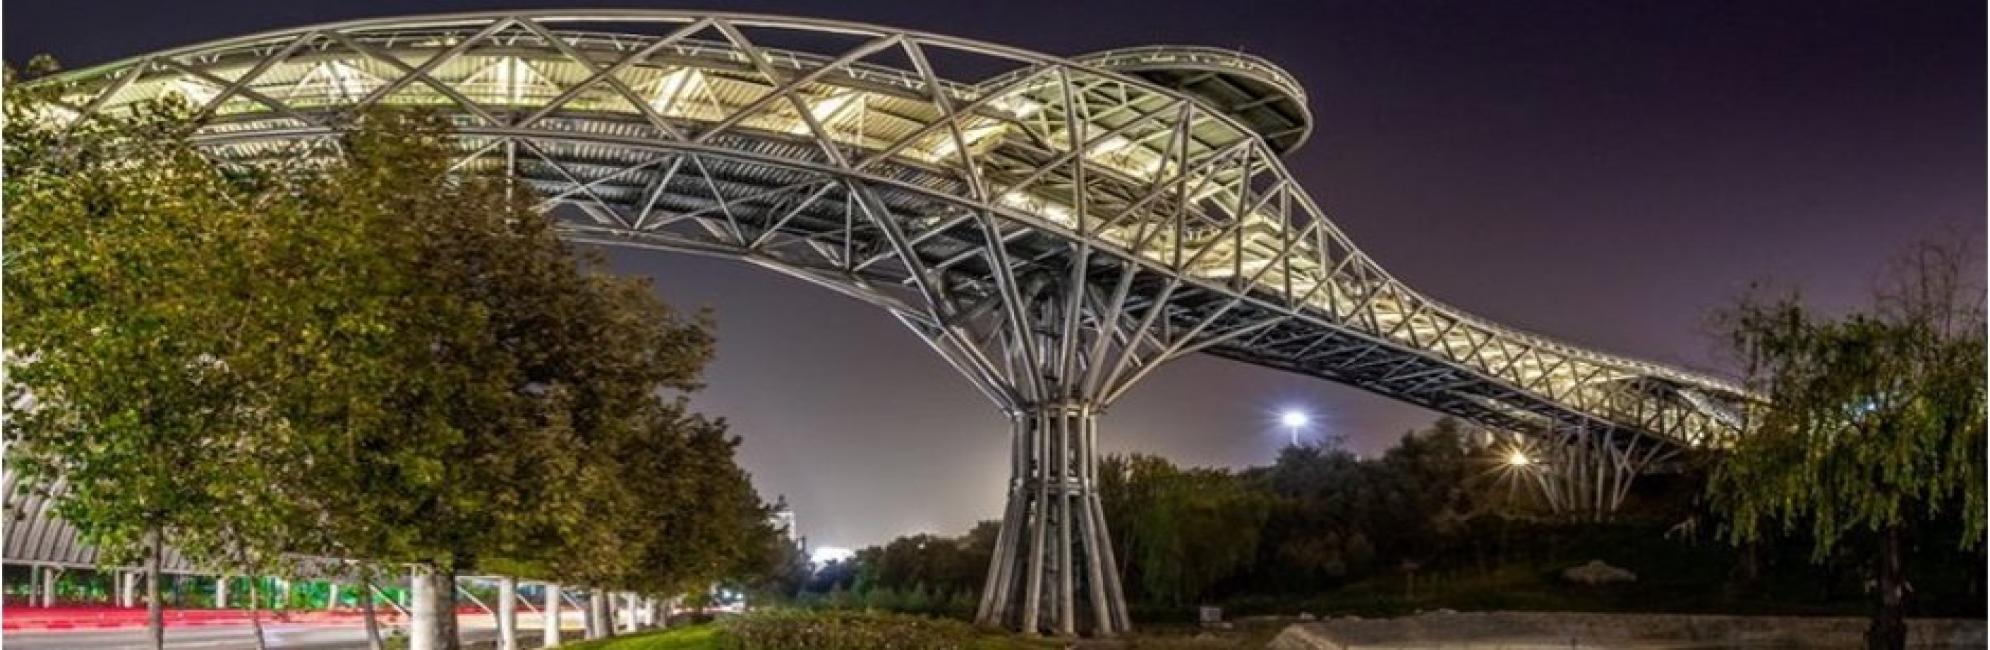 کنترل طراحی و محاسبات سازه پل طبیعت تهران